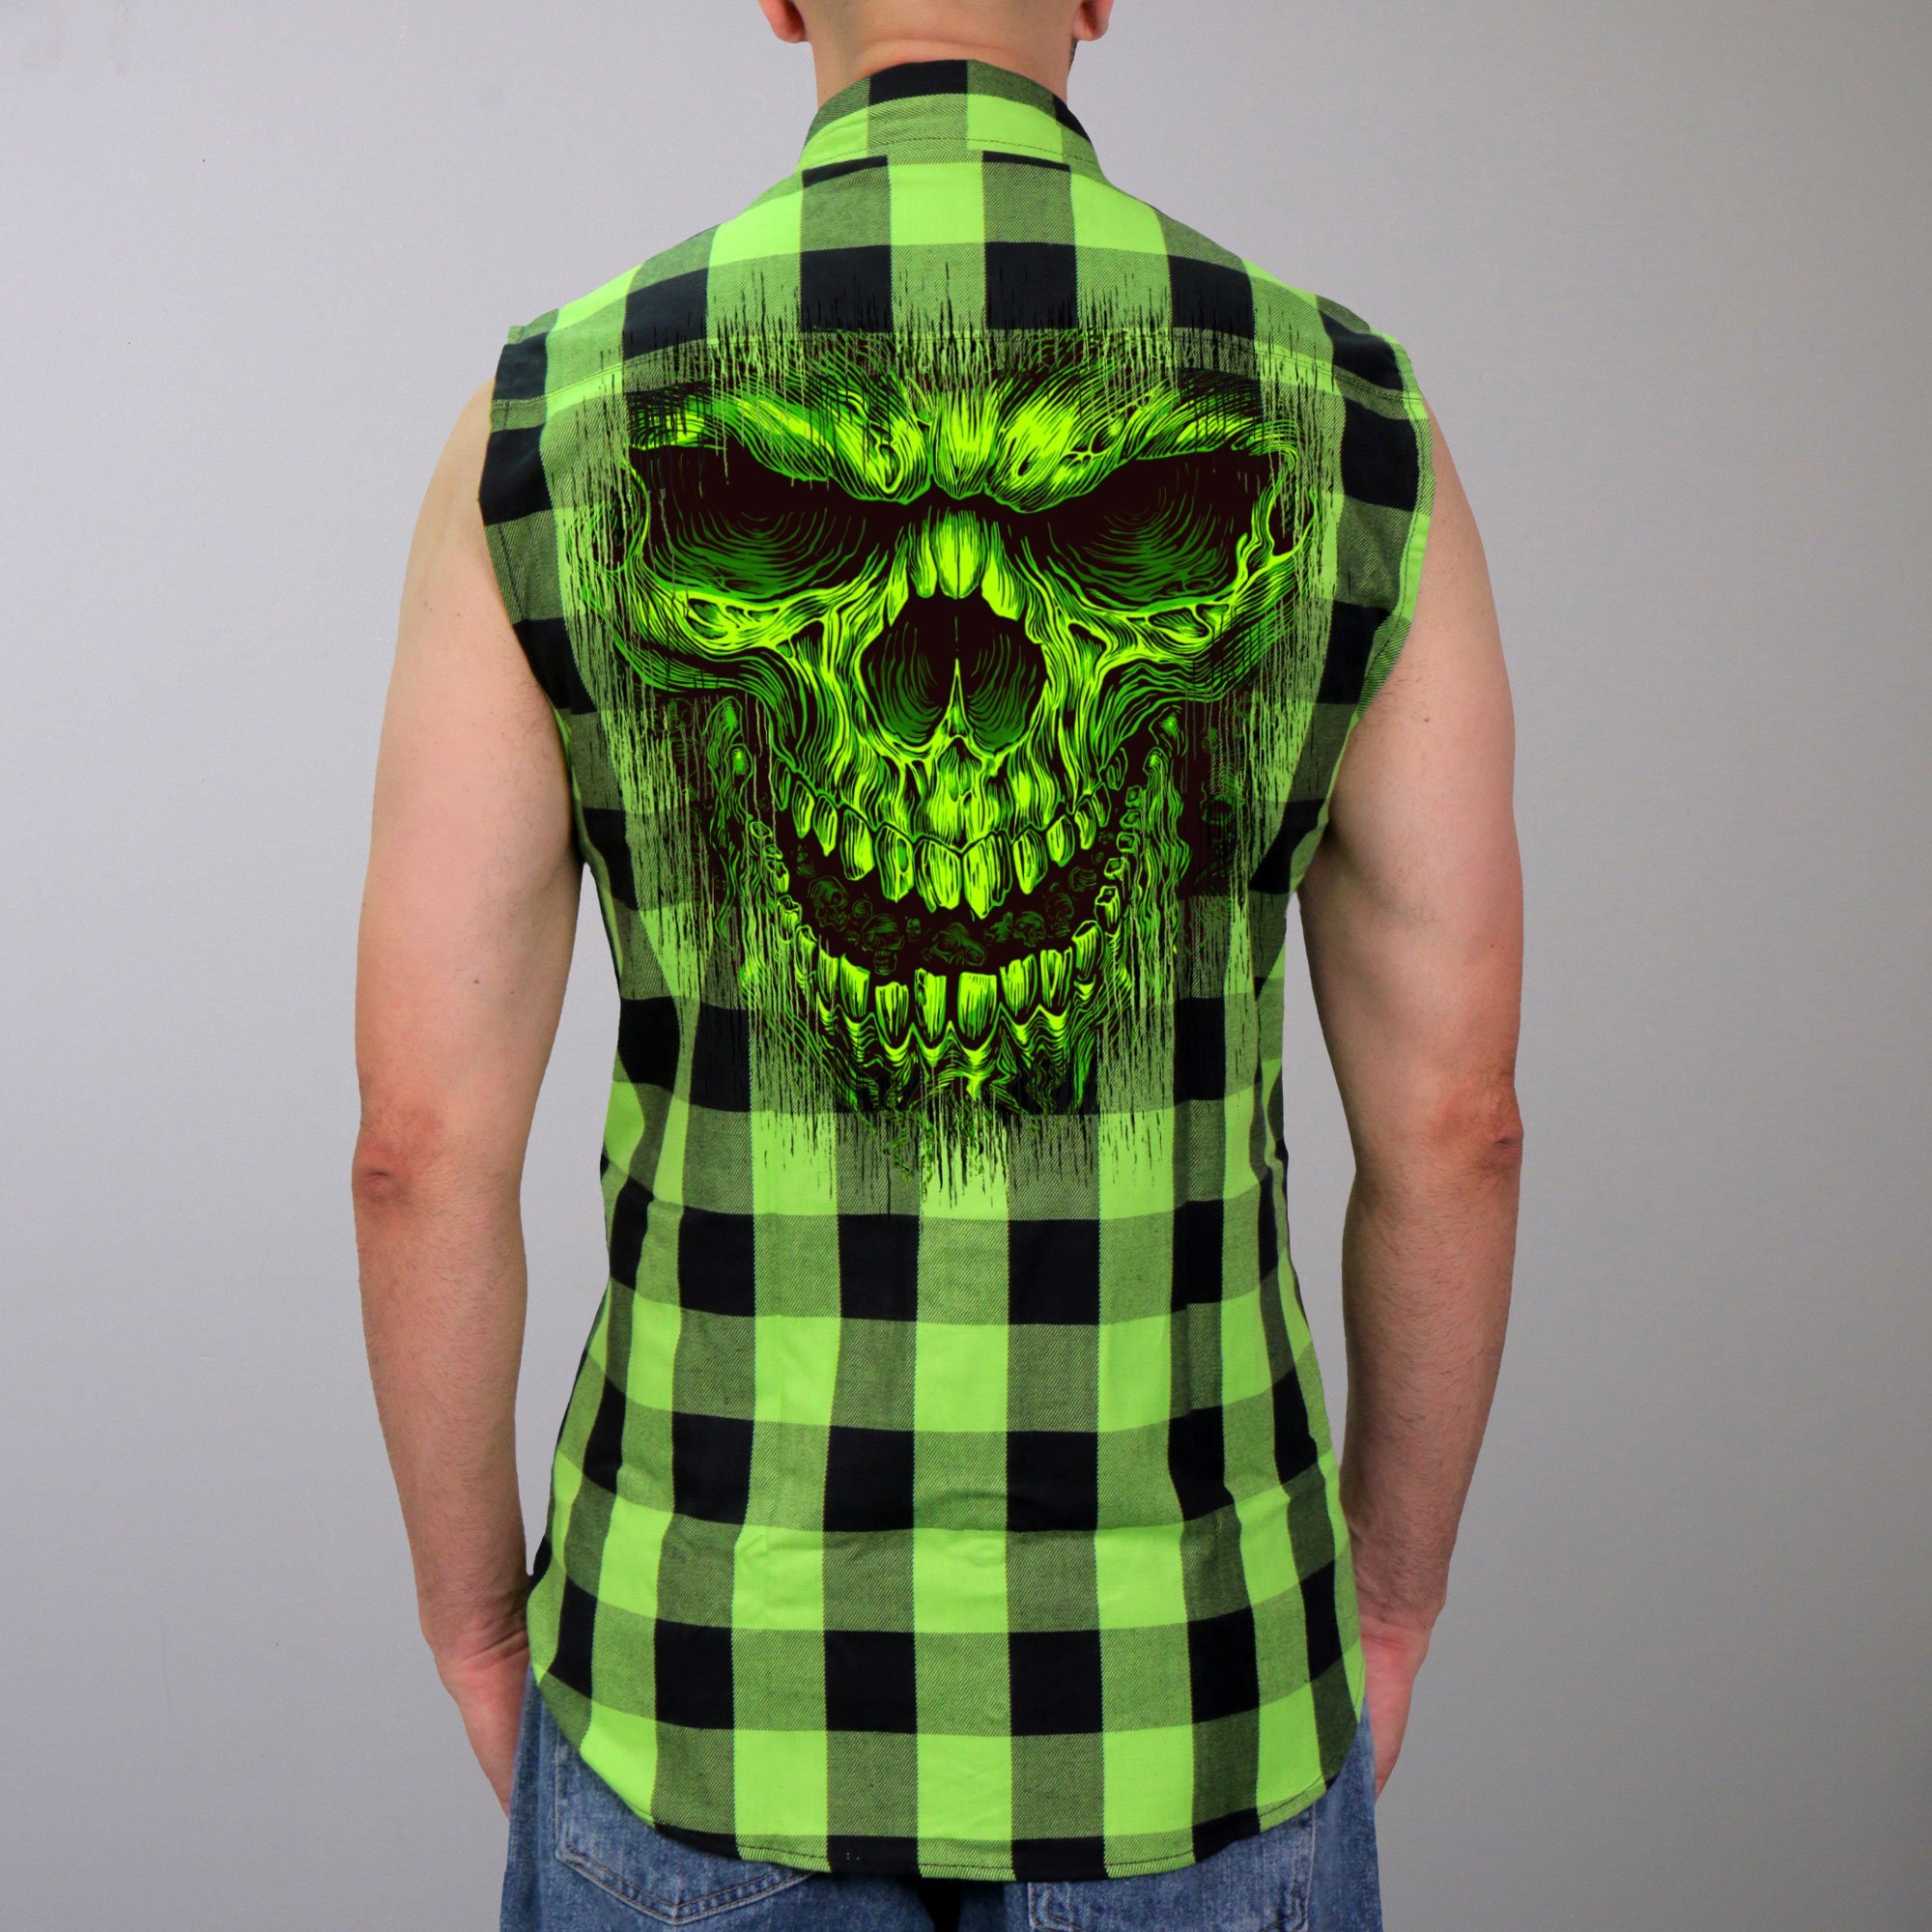 Shredder Skull Sleeveless Biker Flannel Shirt for Men - TattoosCafe